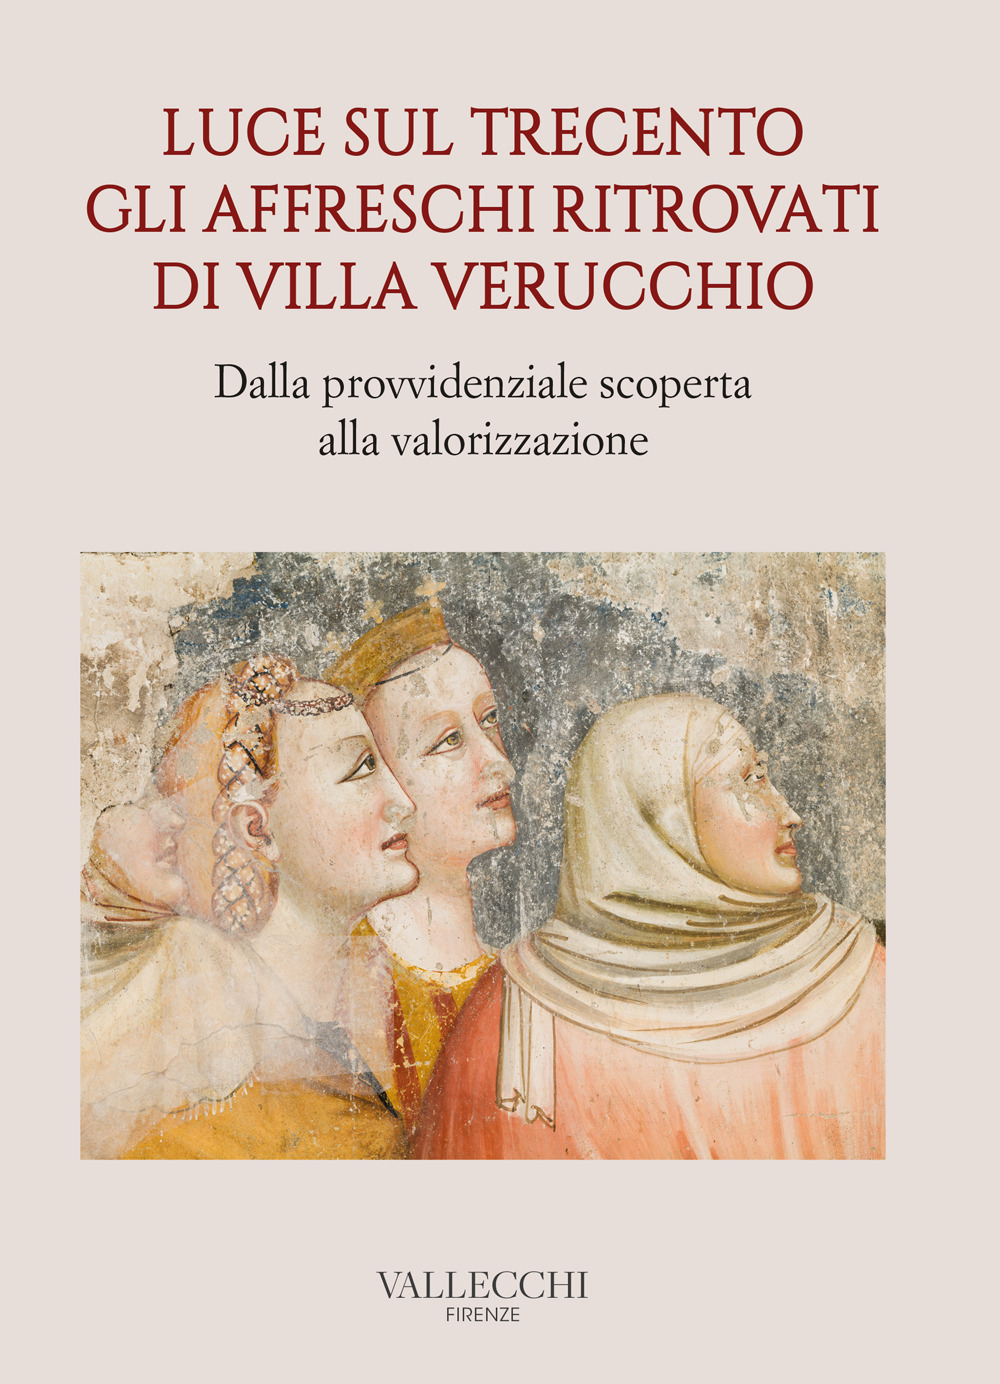 Luce sul Trecento. Gli affreschi ritrovati di Villa Verucchio. Dalla provvidenziale scoperta alla valorizzazione